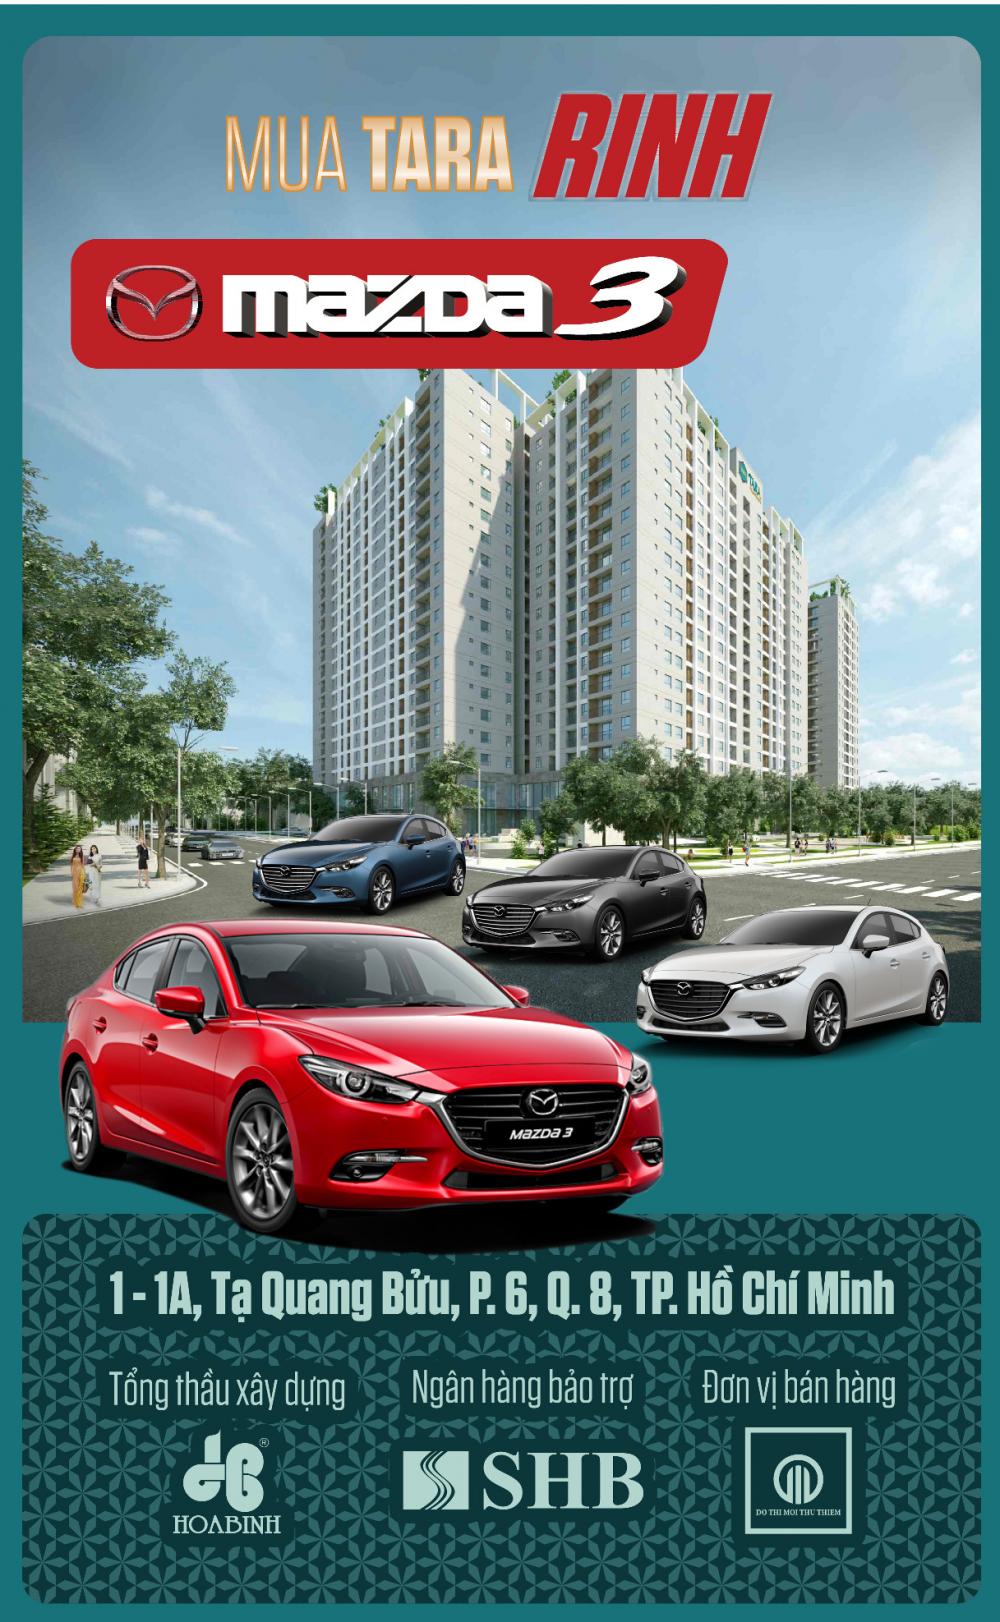 1,6 tỷ Tara Residence MT Tạ Quang Bửu ngay bến xe quận 8, cơ hội được lái Mazda 3